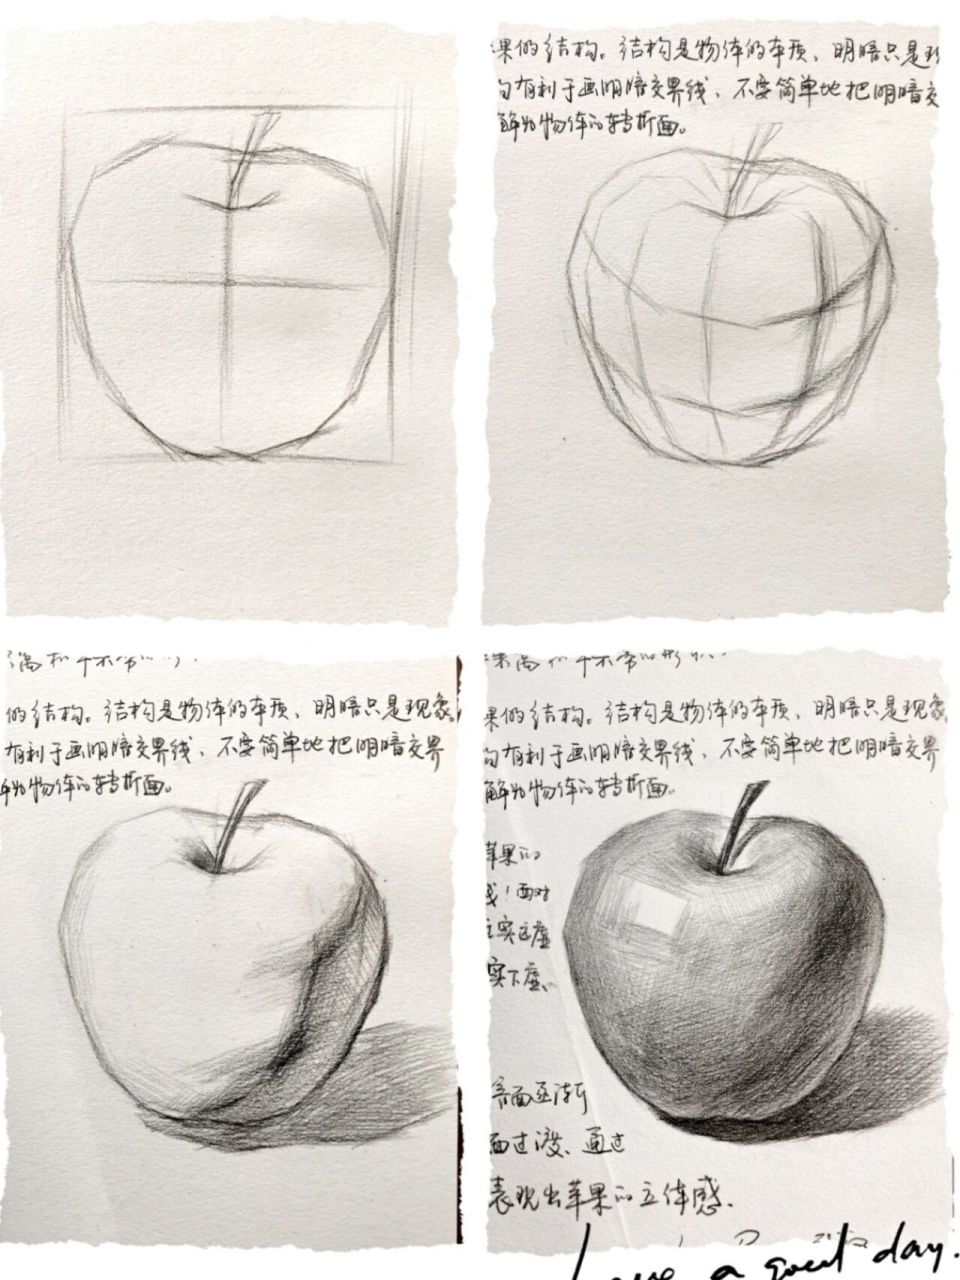 素描苹果,超详细步骤来了 素描初学者,五步结构分析,画好素描苹果不是